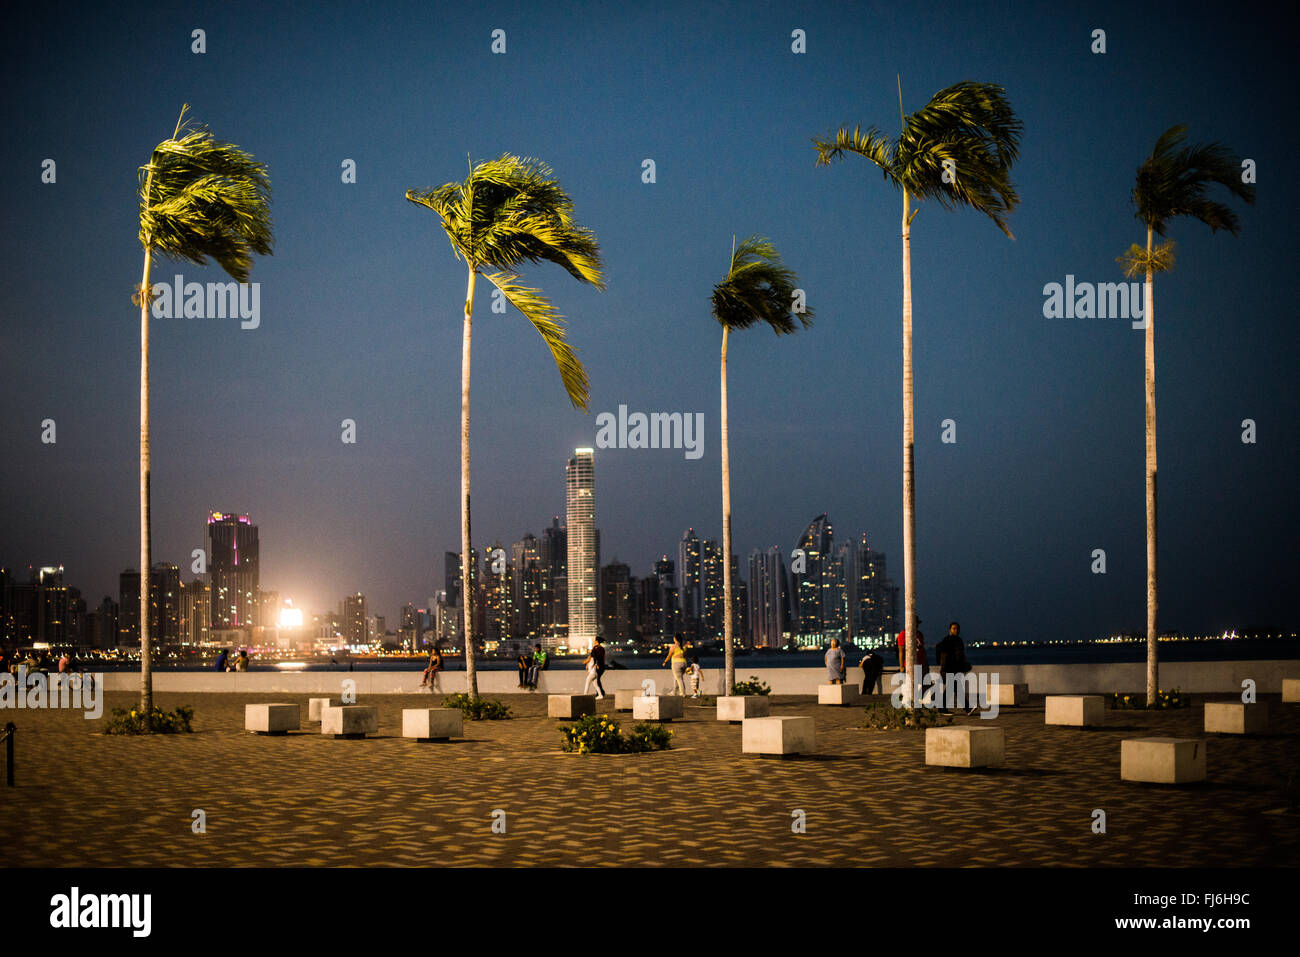 PANAMA CITY, Panama--hohe Palmen Bäume stehen aufrecht an der renovierten Küste von Panama City, Panama, Panama Bay, mit den Lichtern des Punta Paitilla im Hintergrund. Stockfoto